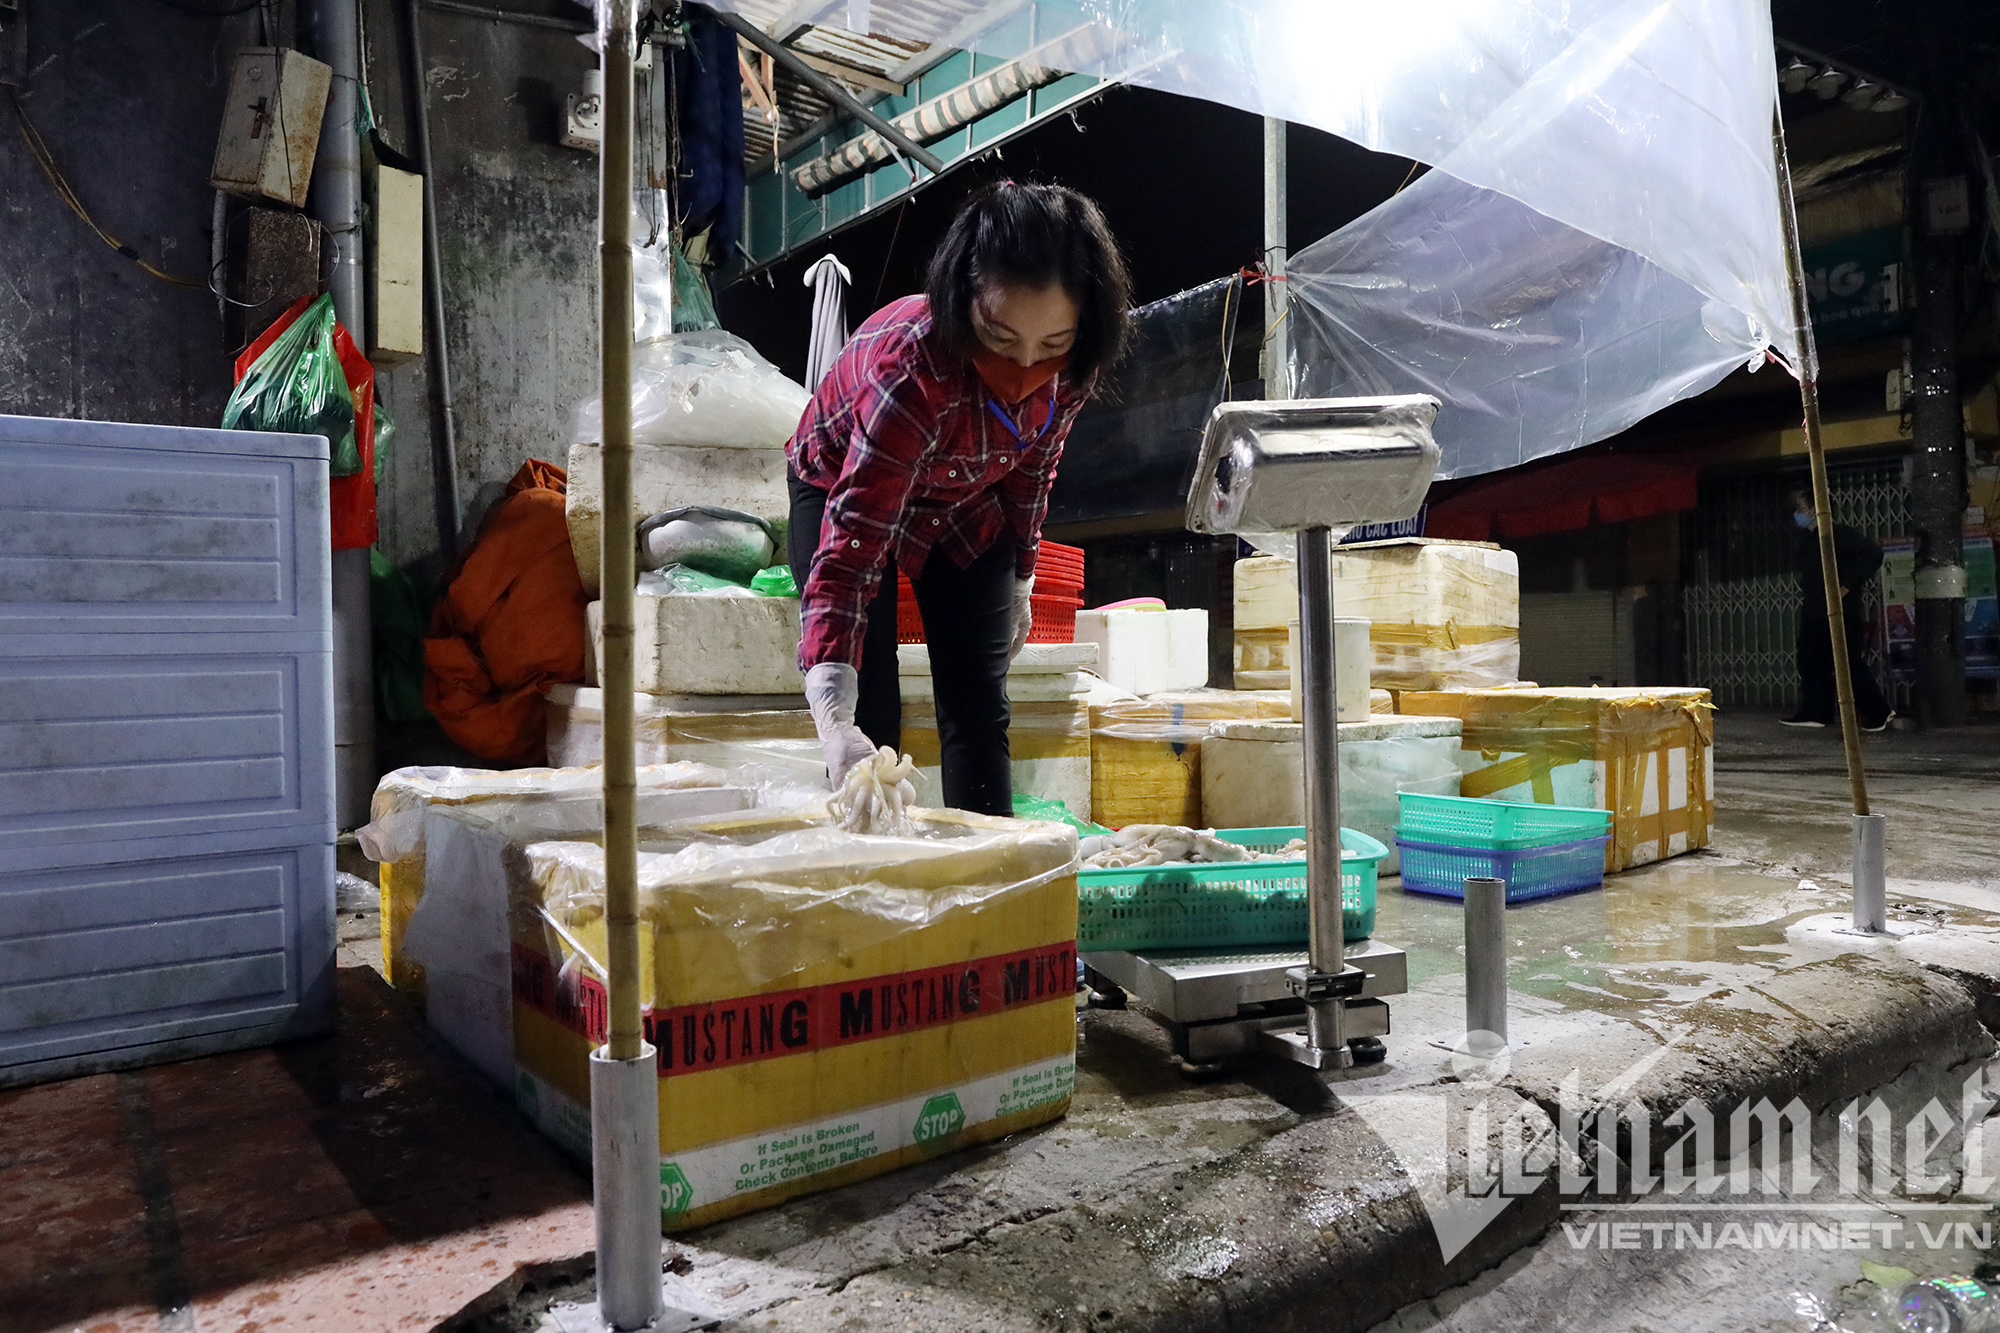 Chợ đầu mối nổi tiếng nhất Hà Nội mở lại sau hai tháng đóng cửa - Ảnh 10.